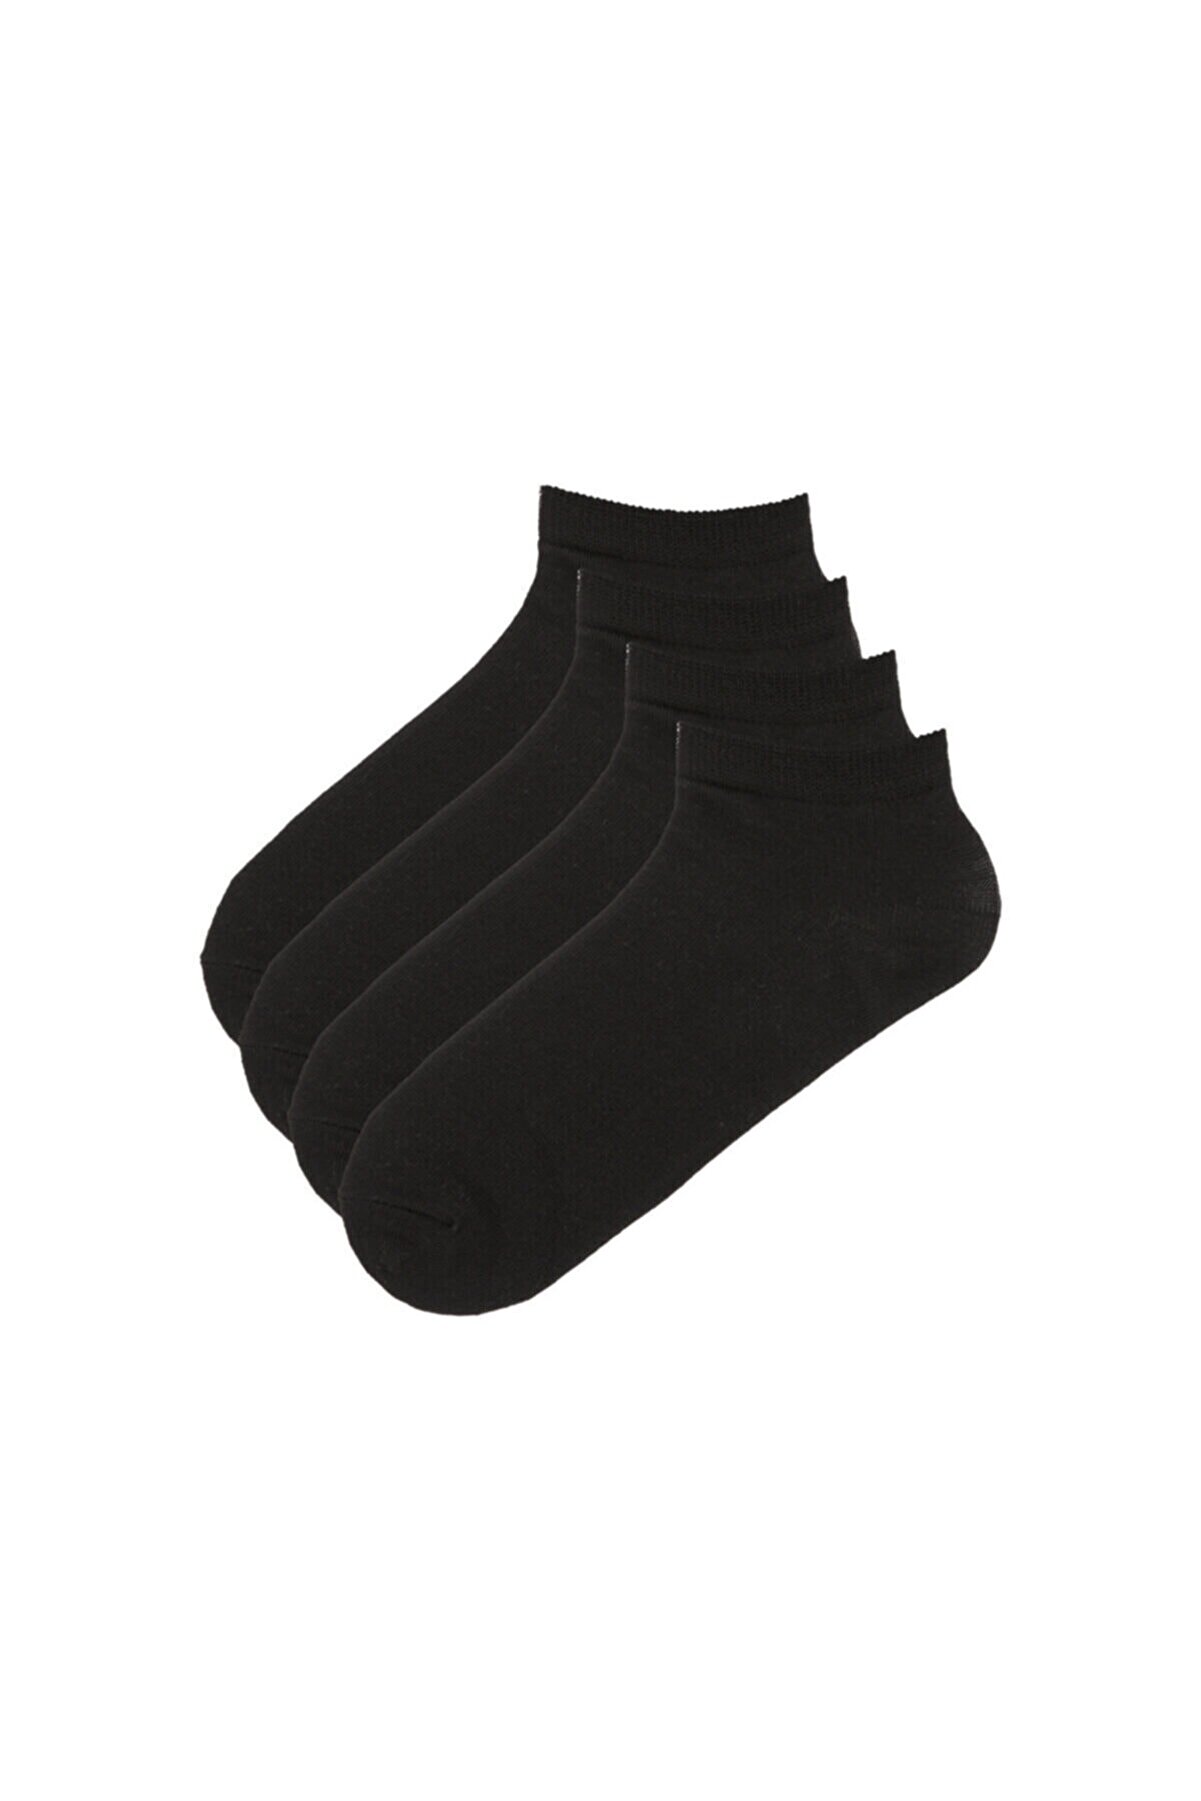 Penti Siyah Basic 4 Lü Patik Çorap